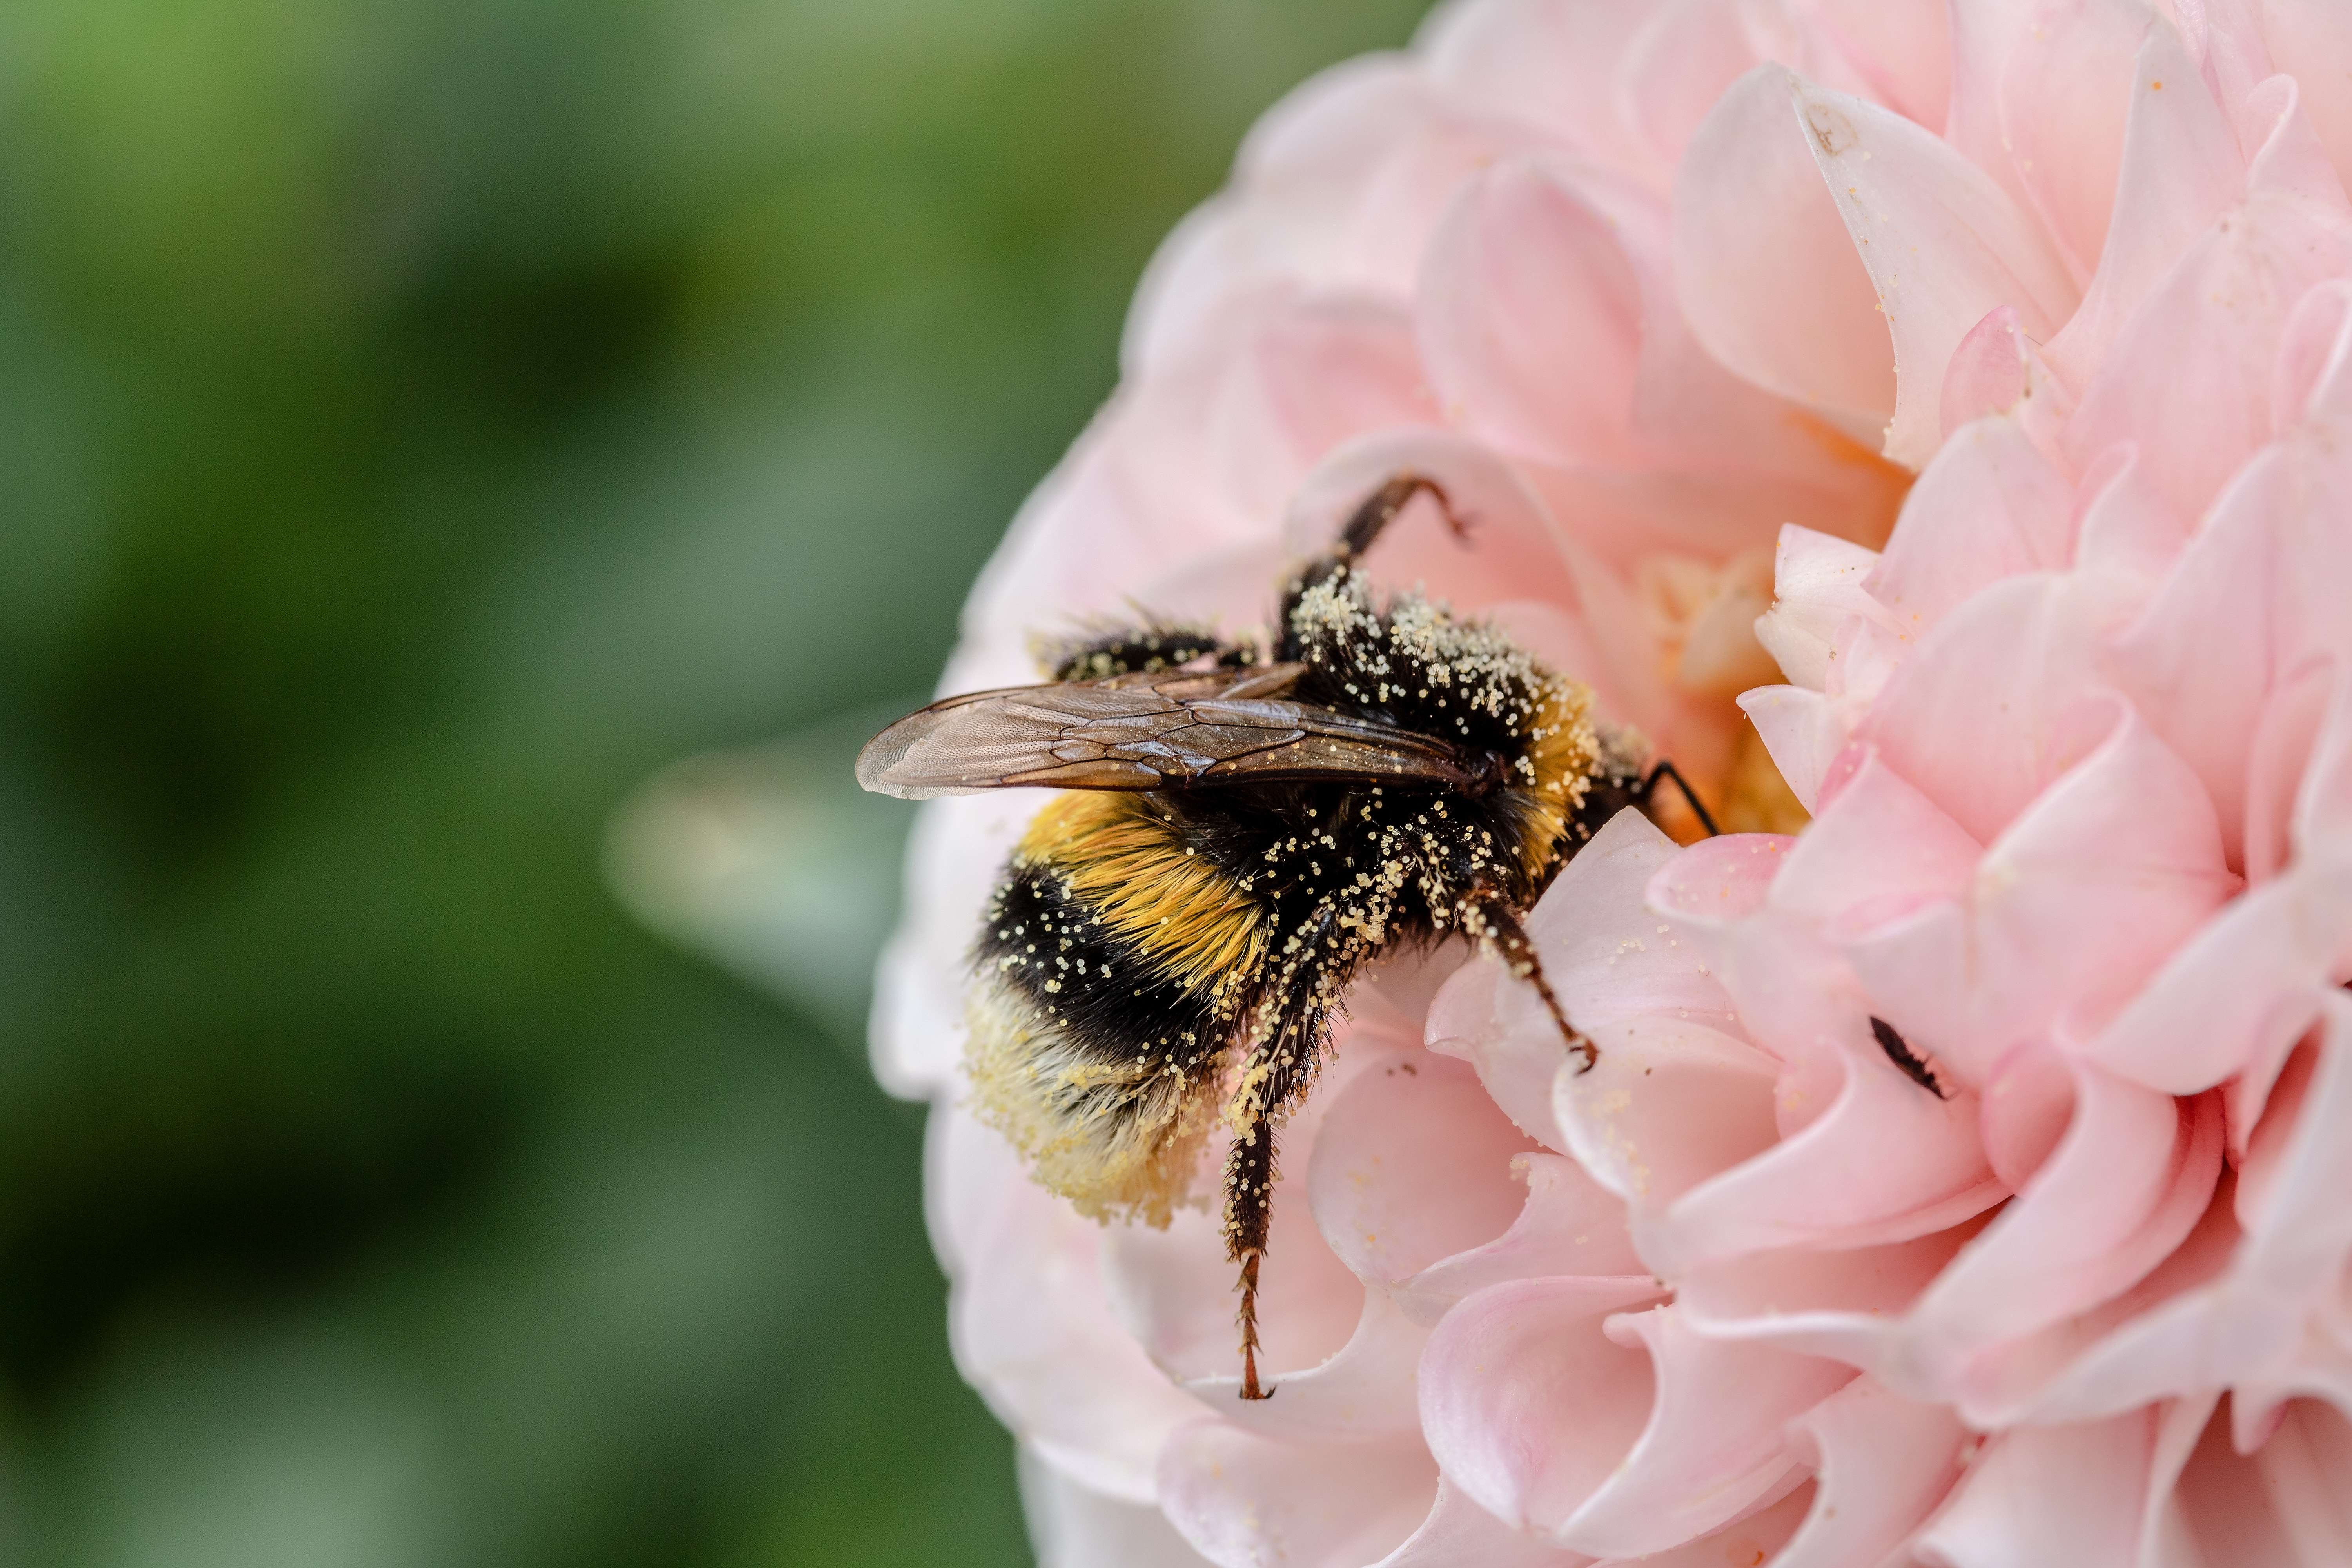 A méhek és a virágok elektromos impulzusokkal kommunikálnak egymással - hasznos információ méhbarát kertek létrehozásához